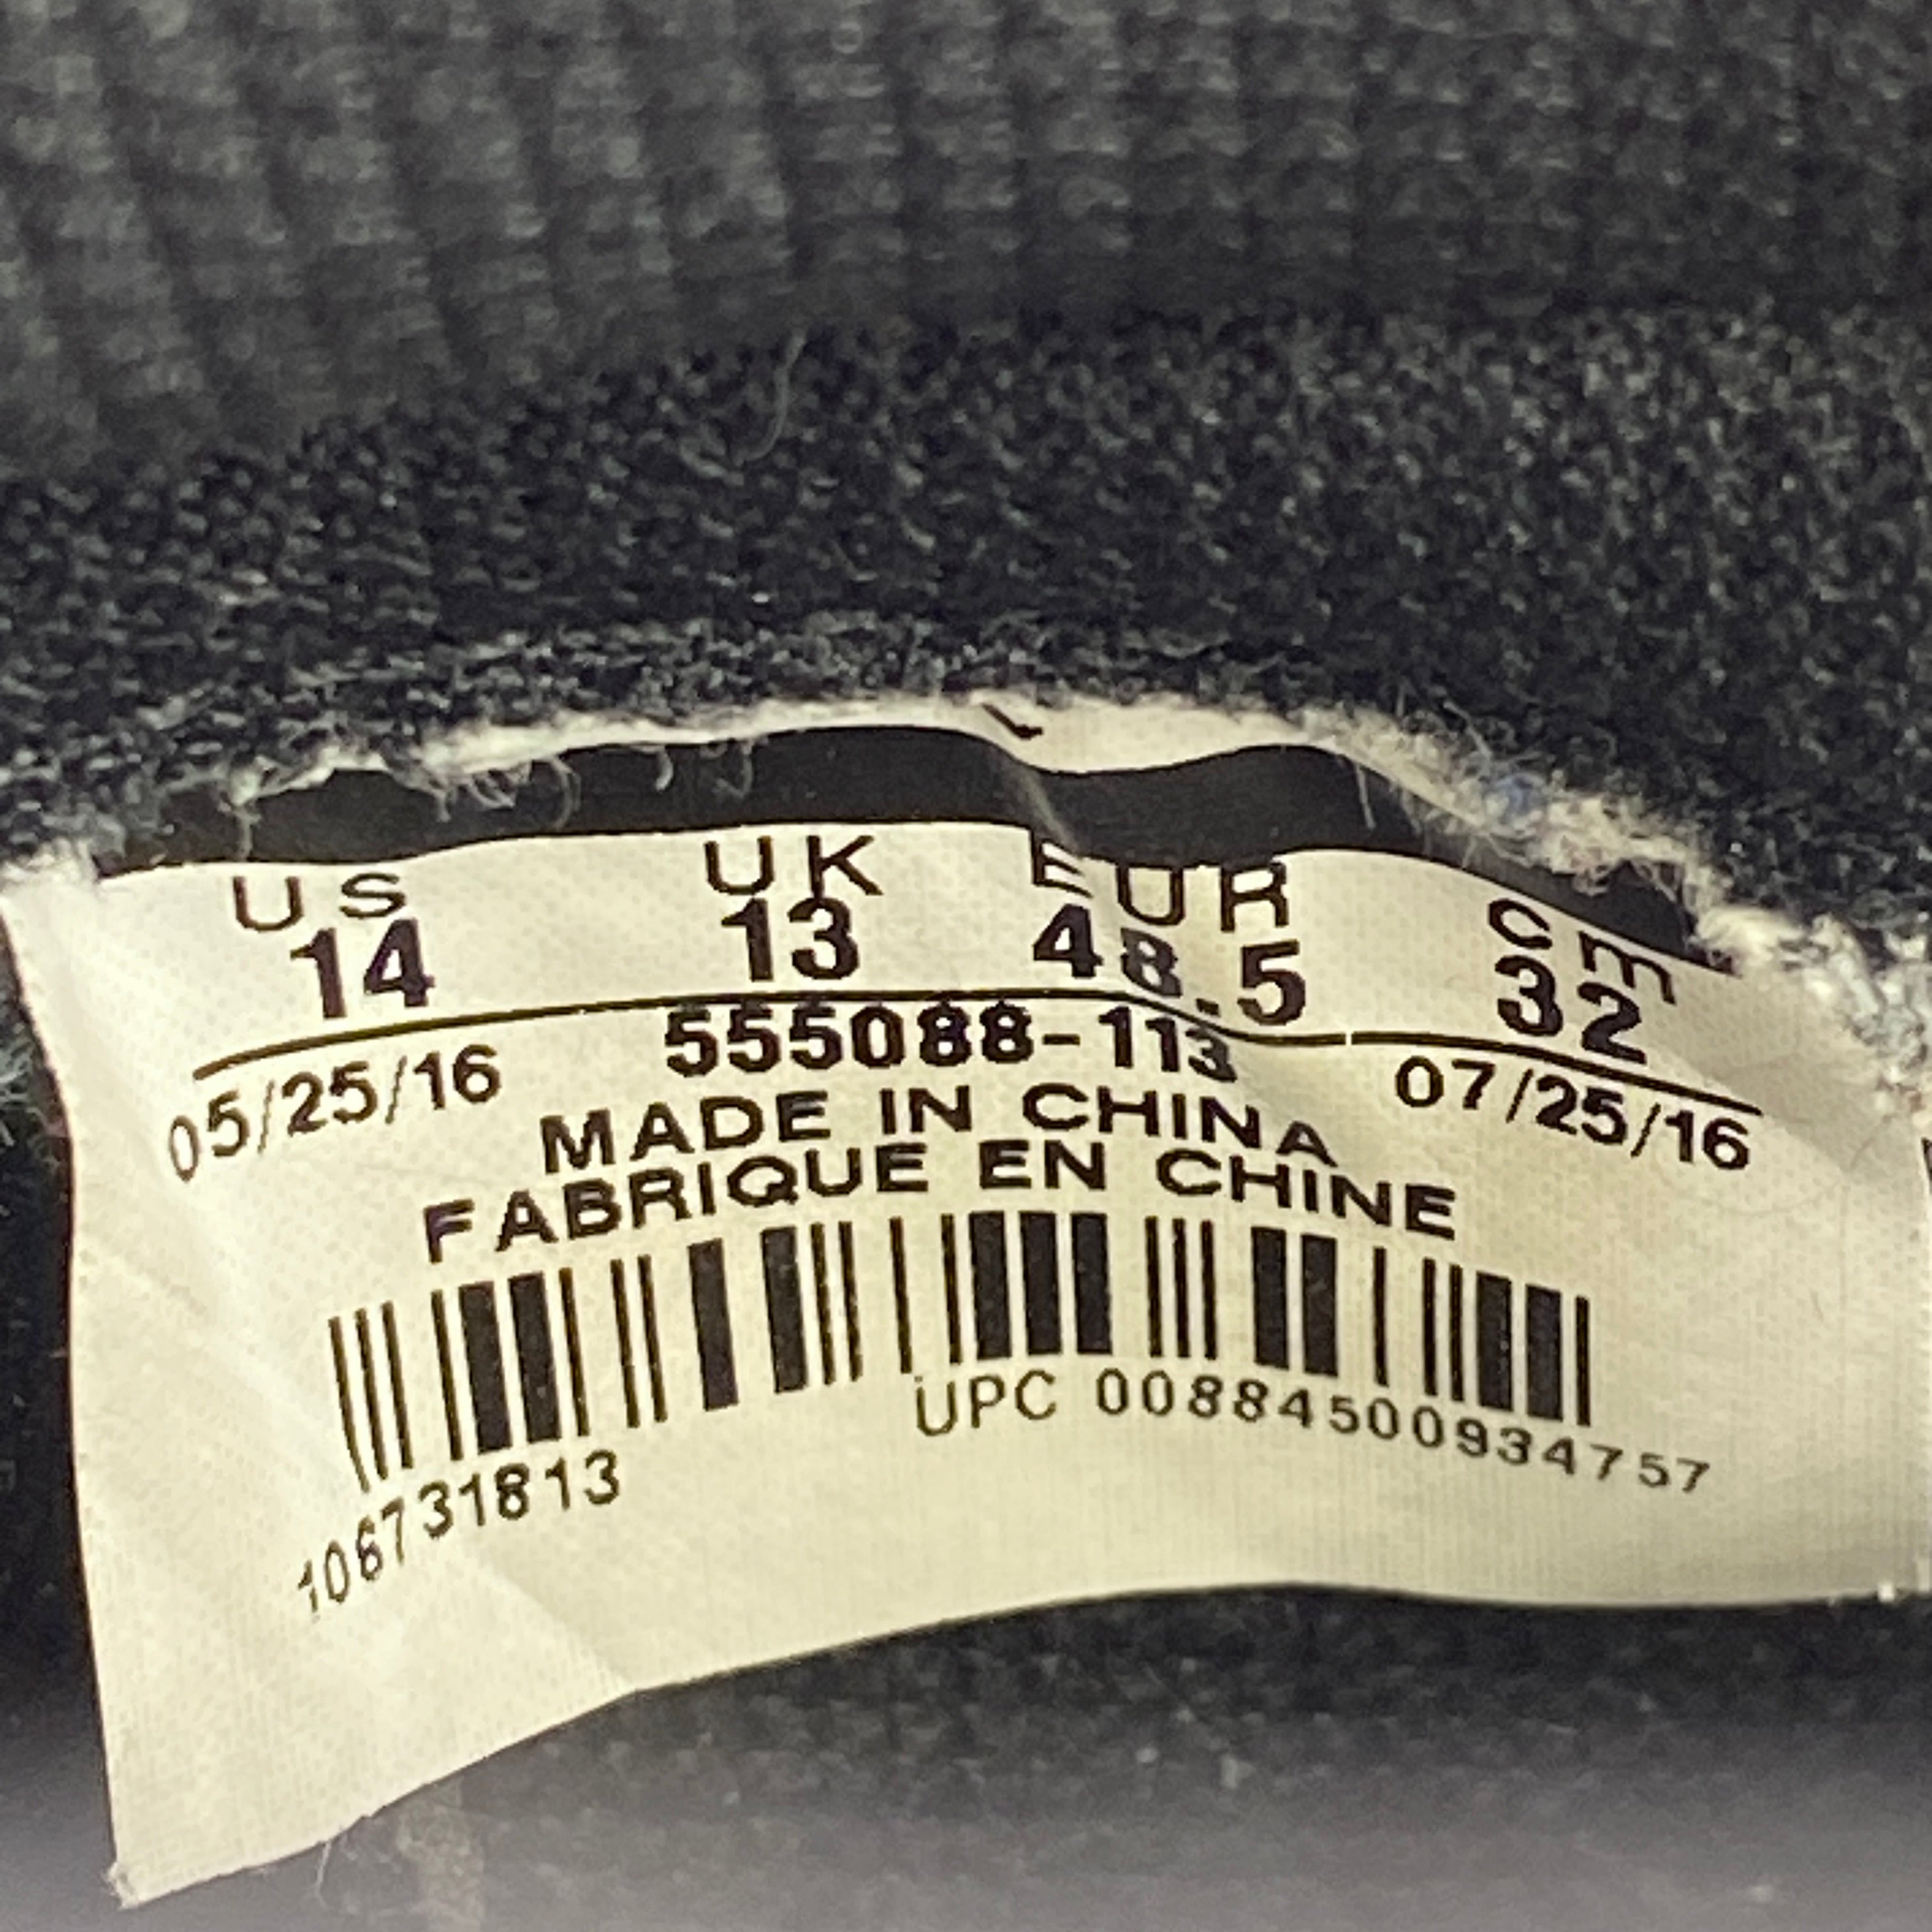 Air Jordan 1 Retro High OG "Reverse Shattered Backboard" 2016 Used Size 14